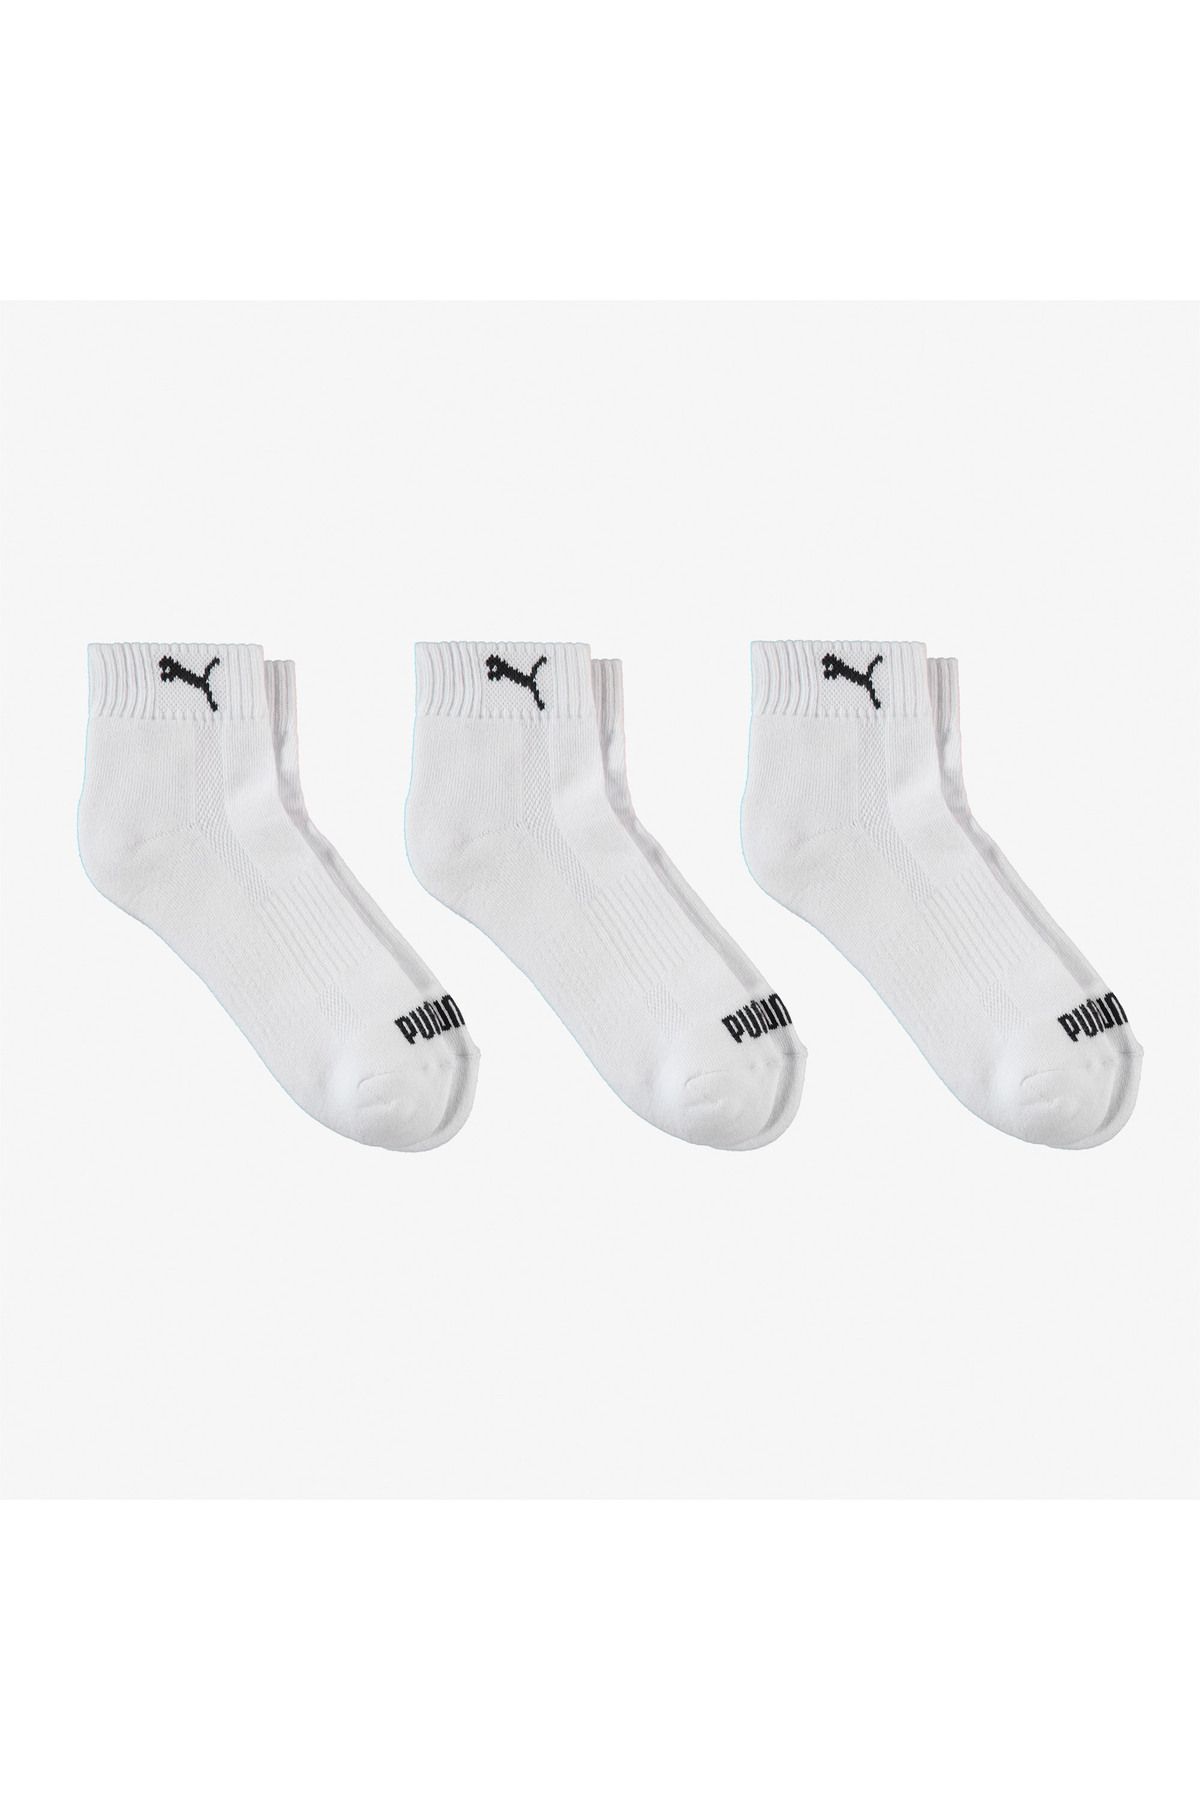 Puma Unisex Beyaz 3'lü Çorap